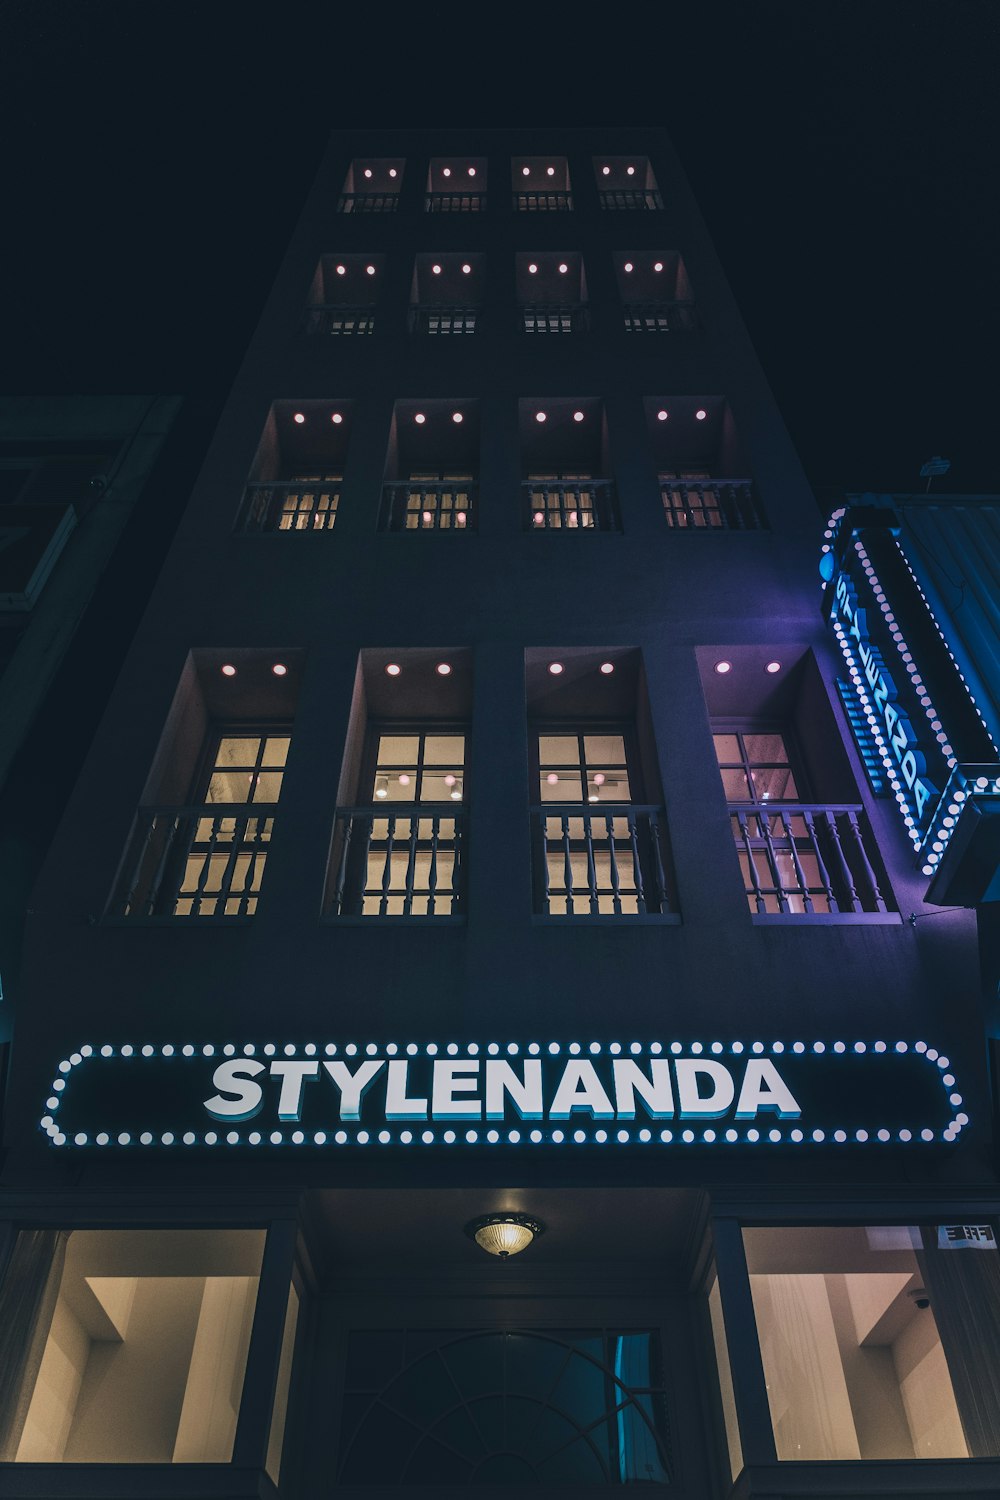 Stylenanada building